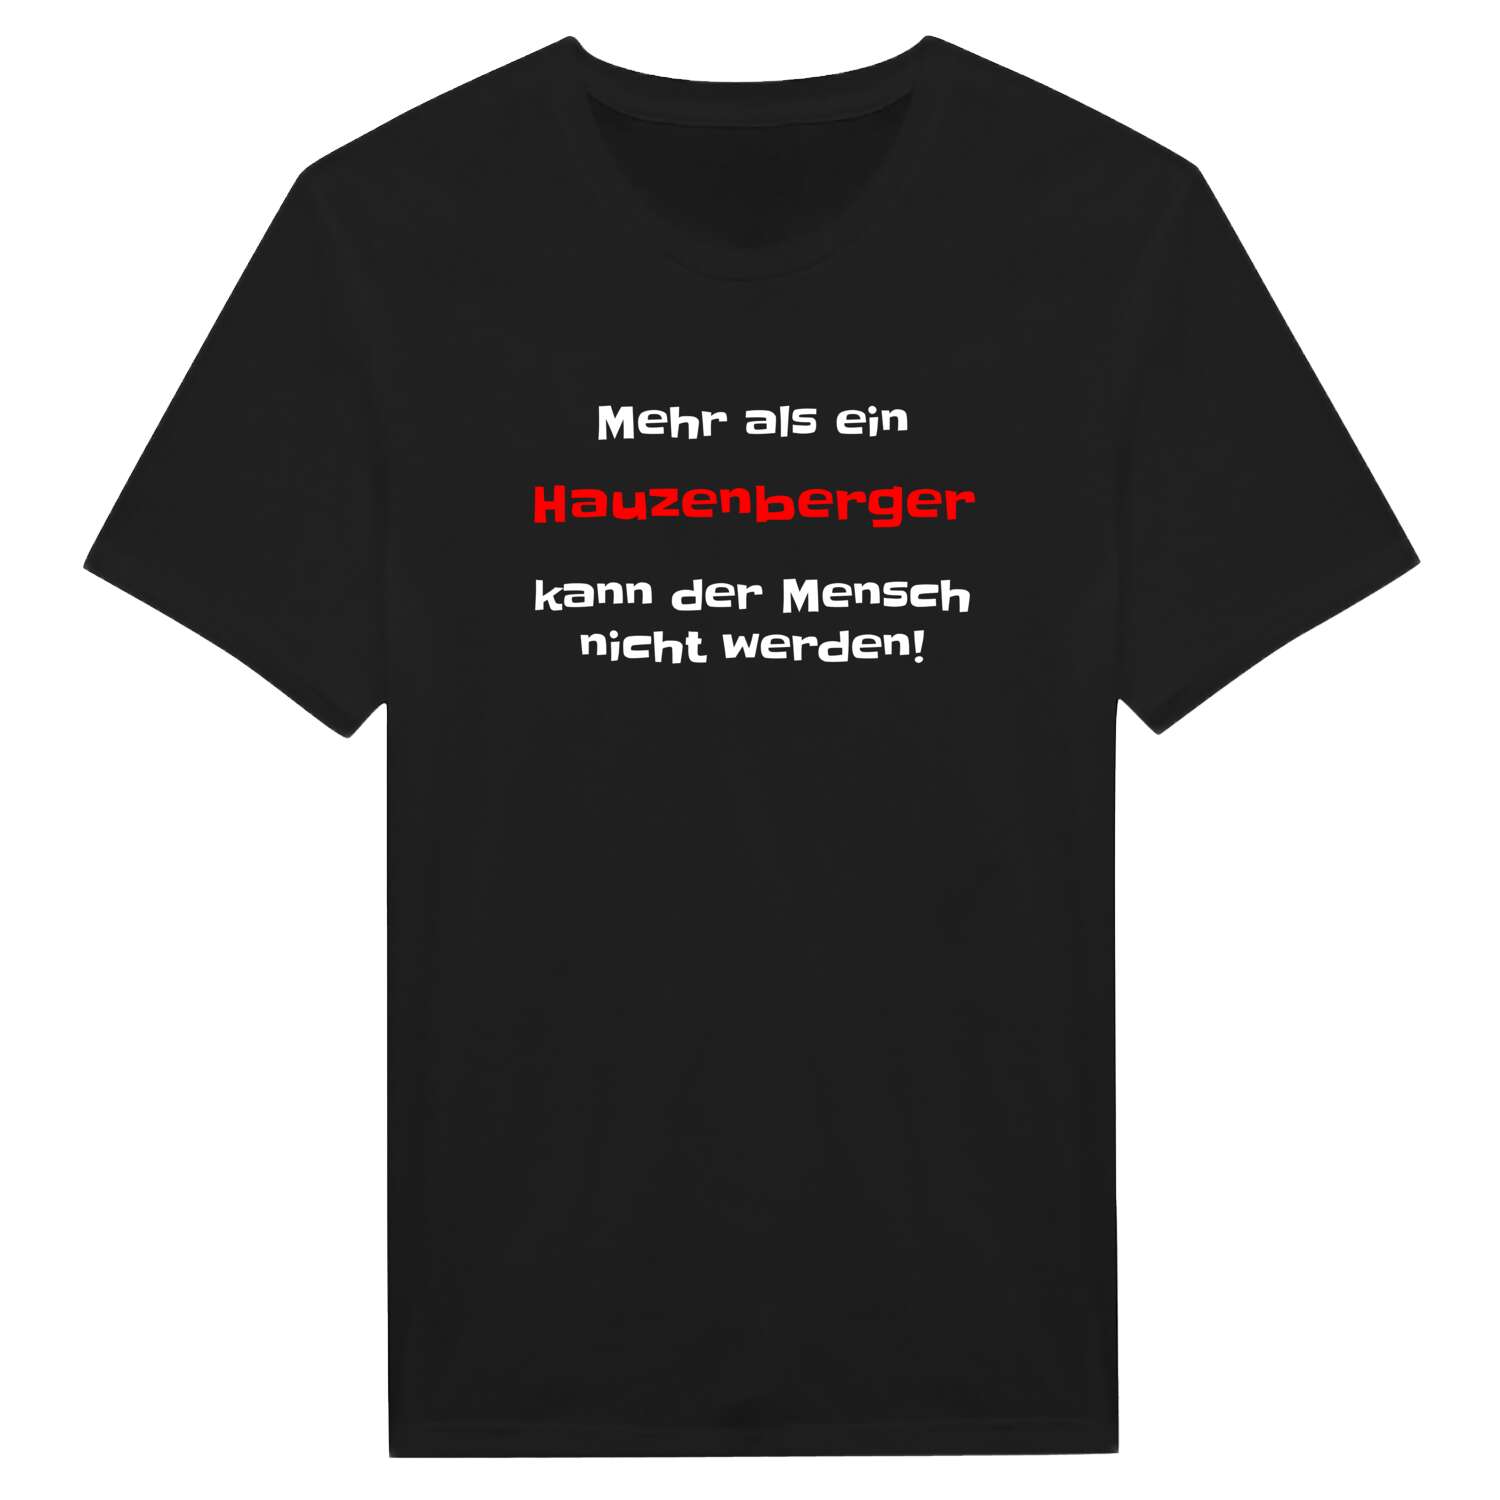 Hauzenberg T-Shirt »Mehr als ein«